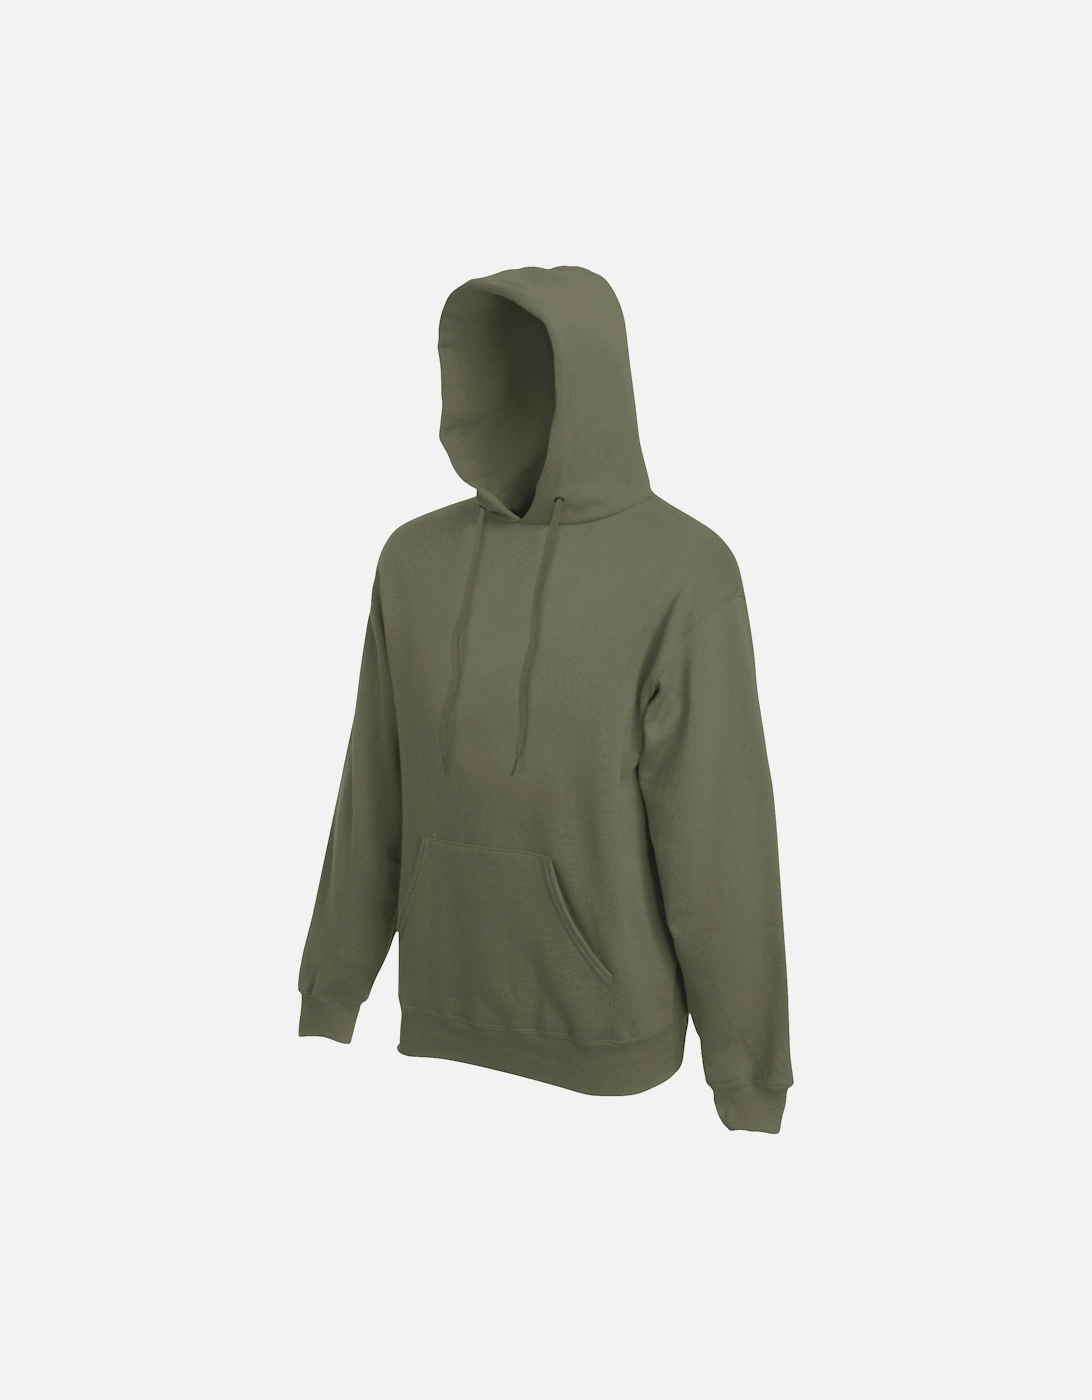 Mens Premium 70/30 Hooded Sweatshirt / Hoodie, 3 of 2